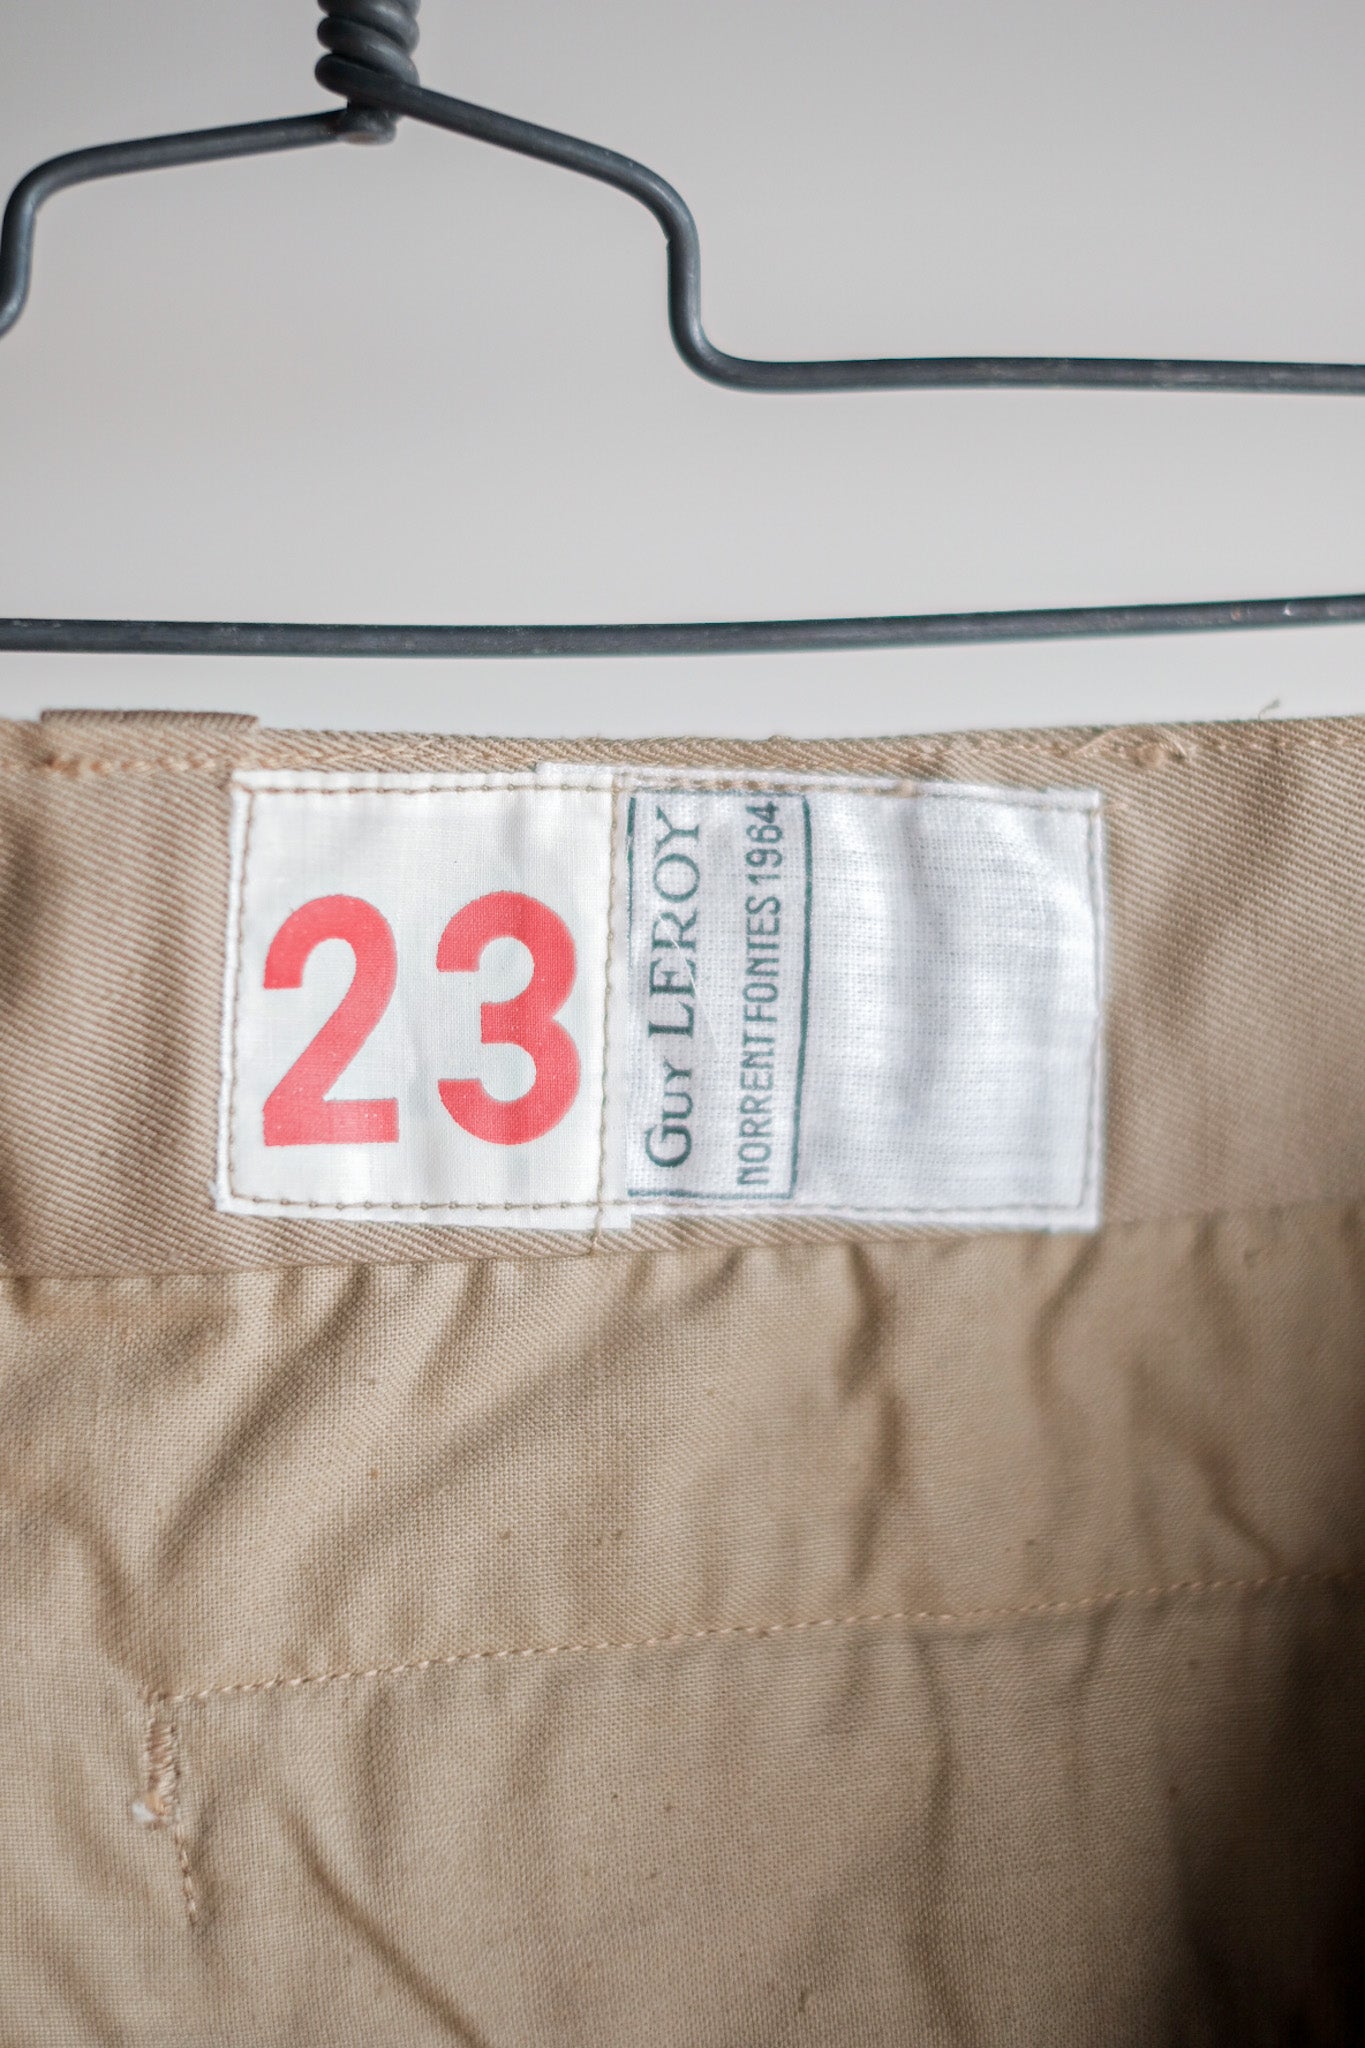 [〜60年代]法國陸軍M52 Chino褲子大小。23“死股”